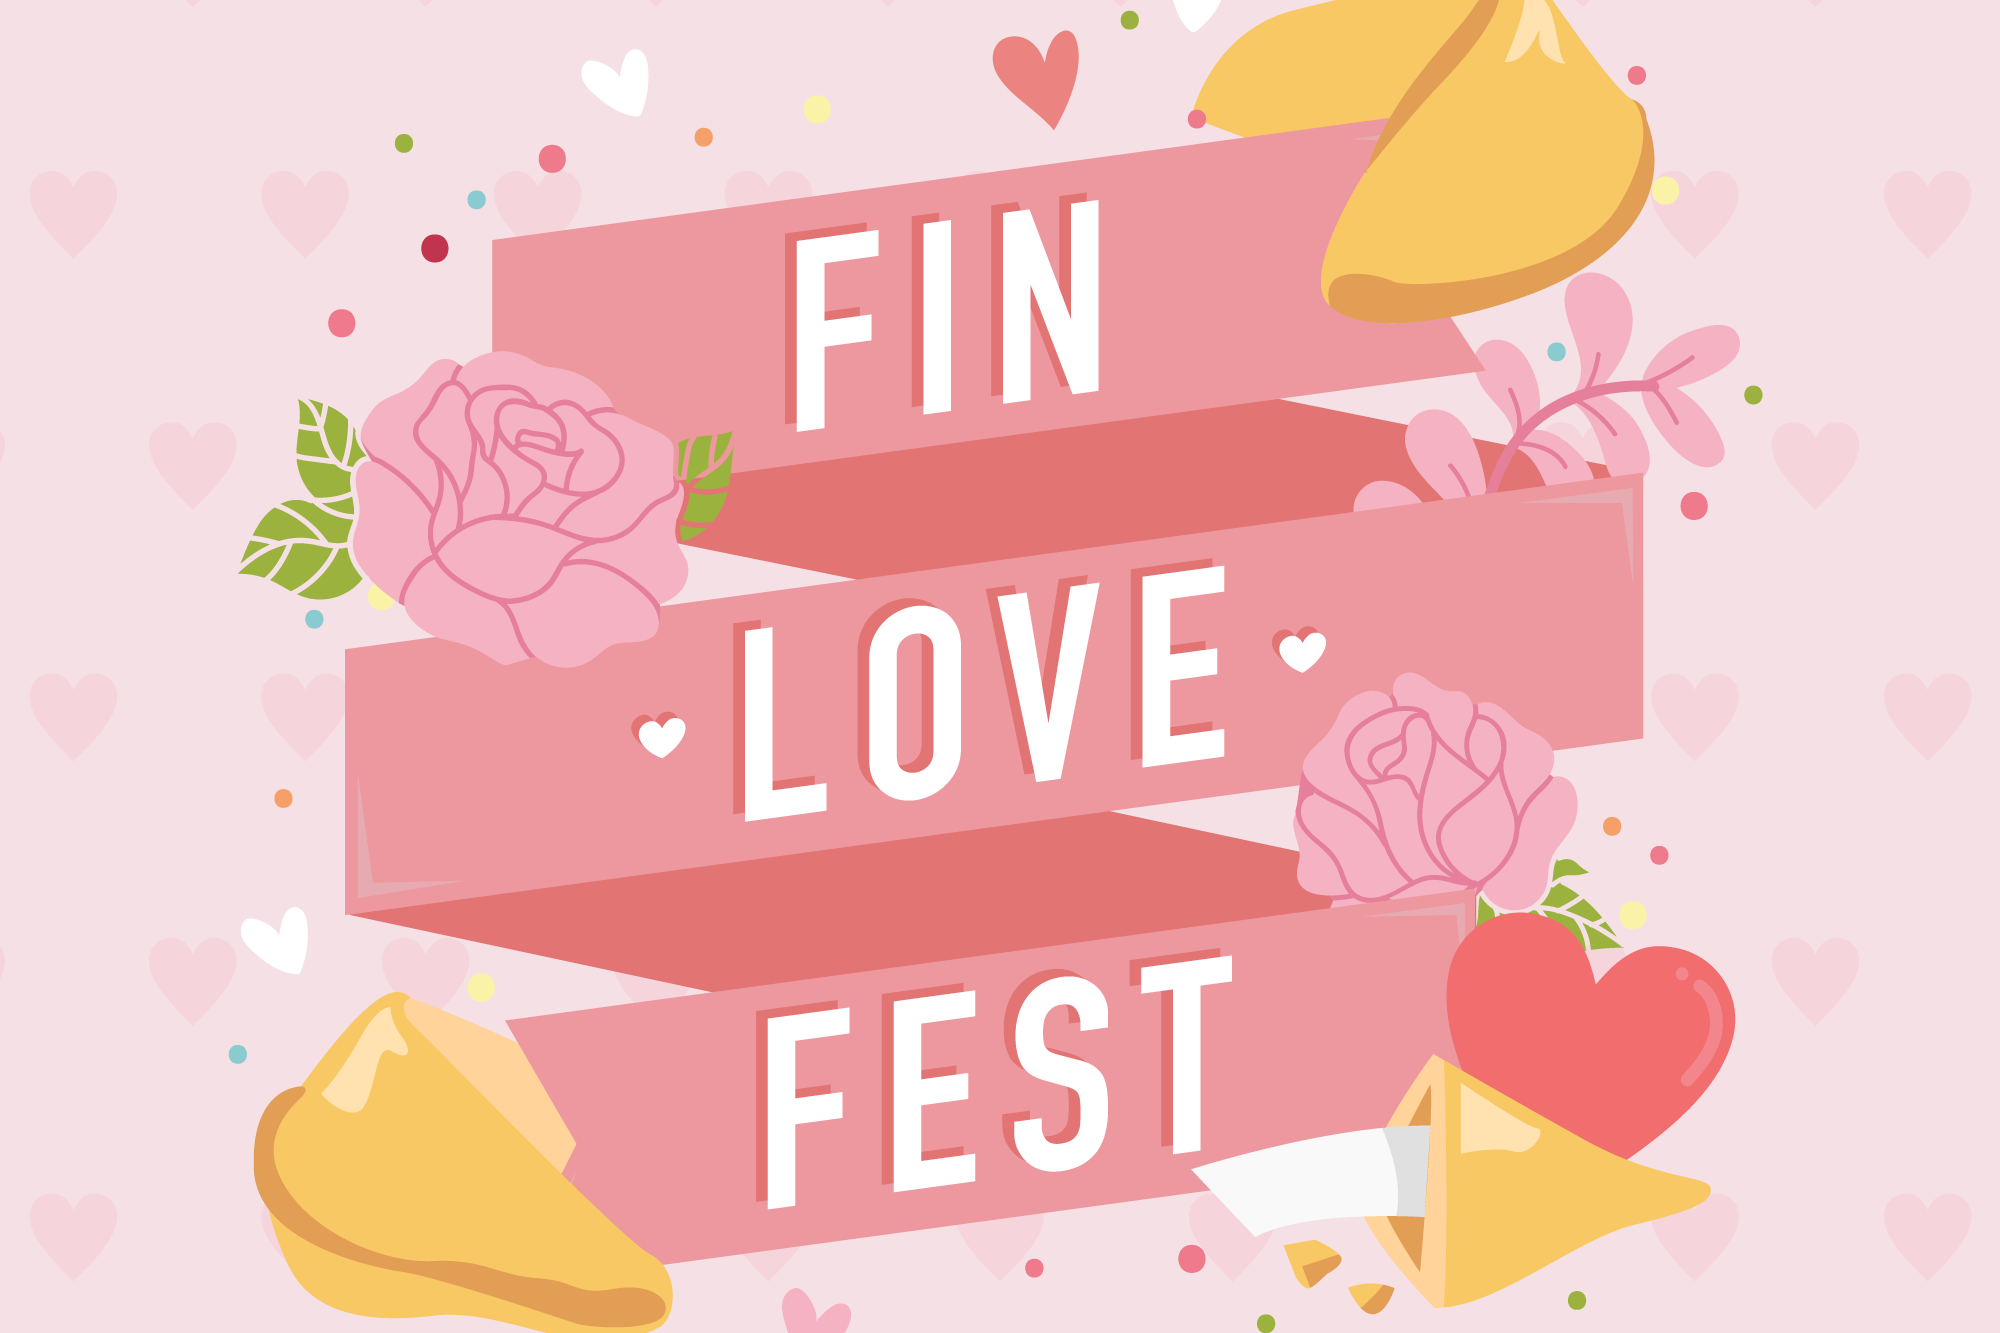 Fin Love Fest อยากรักก็ต้องเสี่ยง พบกัน 9-14 ก.พ. 61 เซ็นทรัลเฟสฯ เชียงใหม่